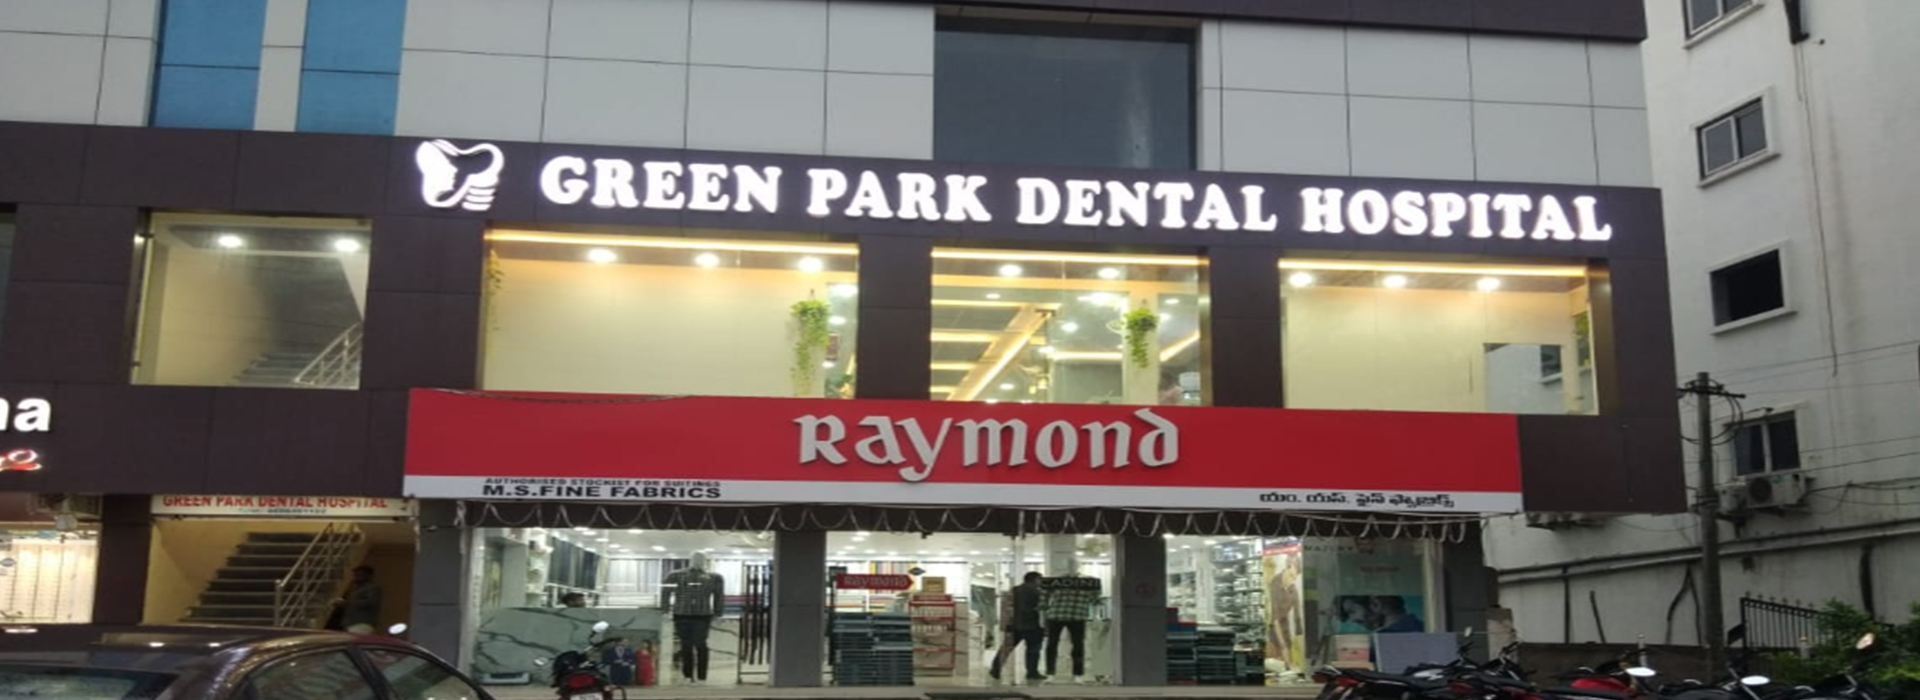 Green Park Dental Hospital